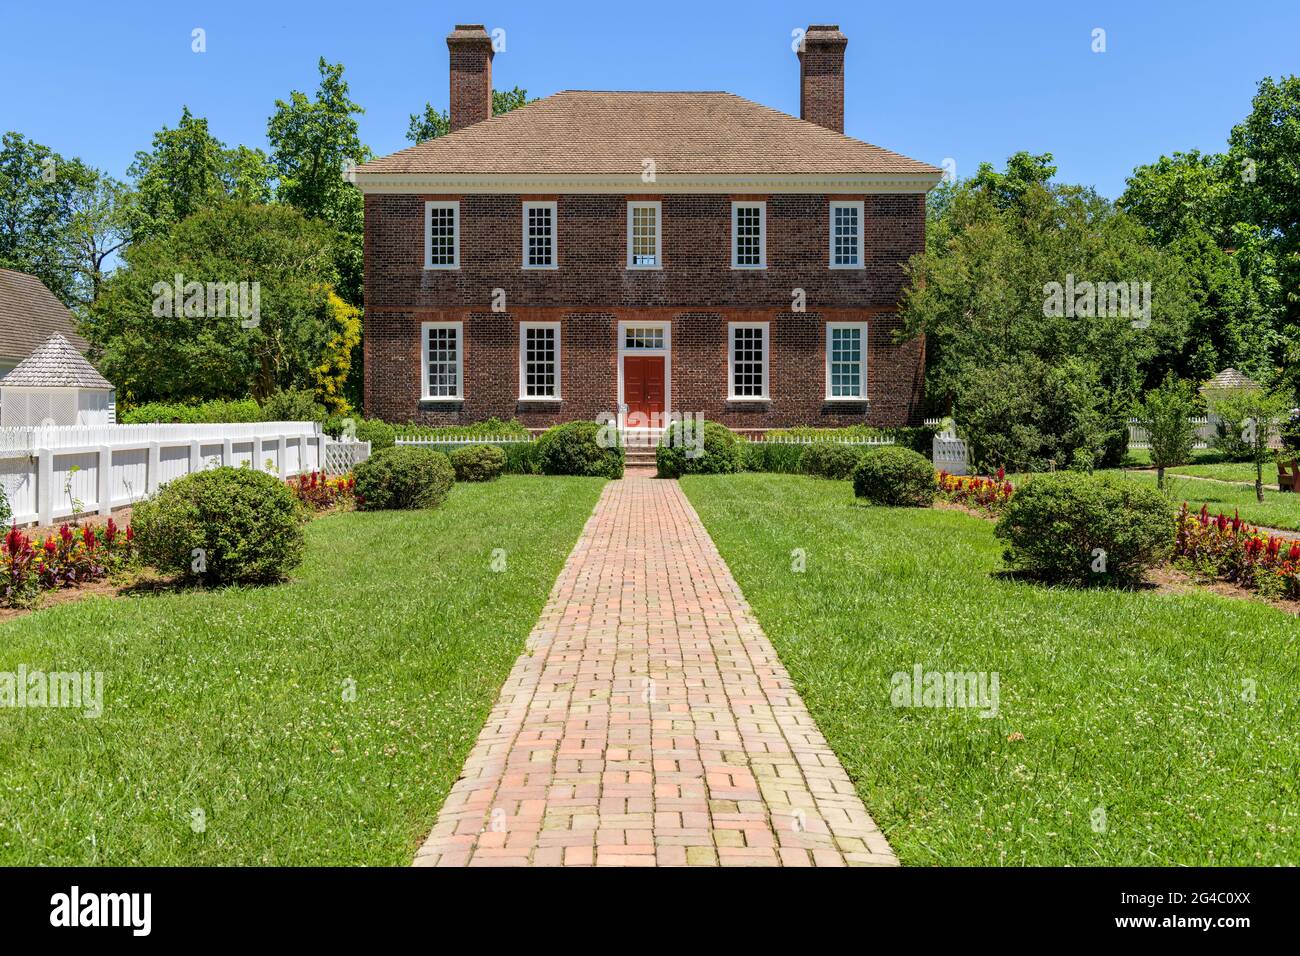 Wythe House - EINE sonnige Tagesansicht des historischen George Wythe House aus dem 18. Jahrhundert, von seinem Garten aus gesehen, in Williamsburg, Virginia, USA. Stockfoto